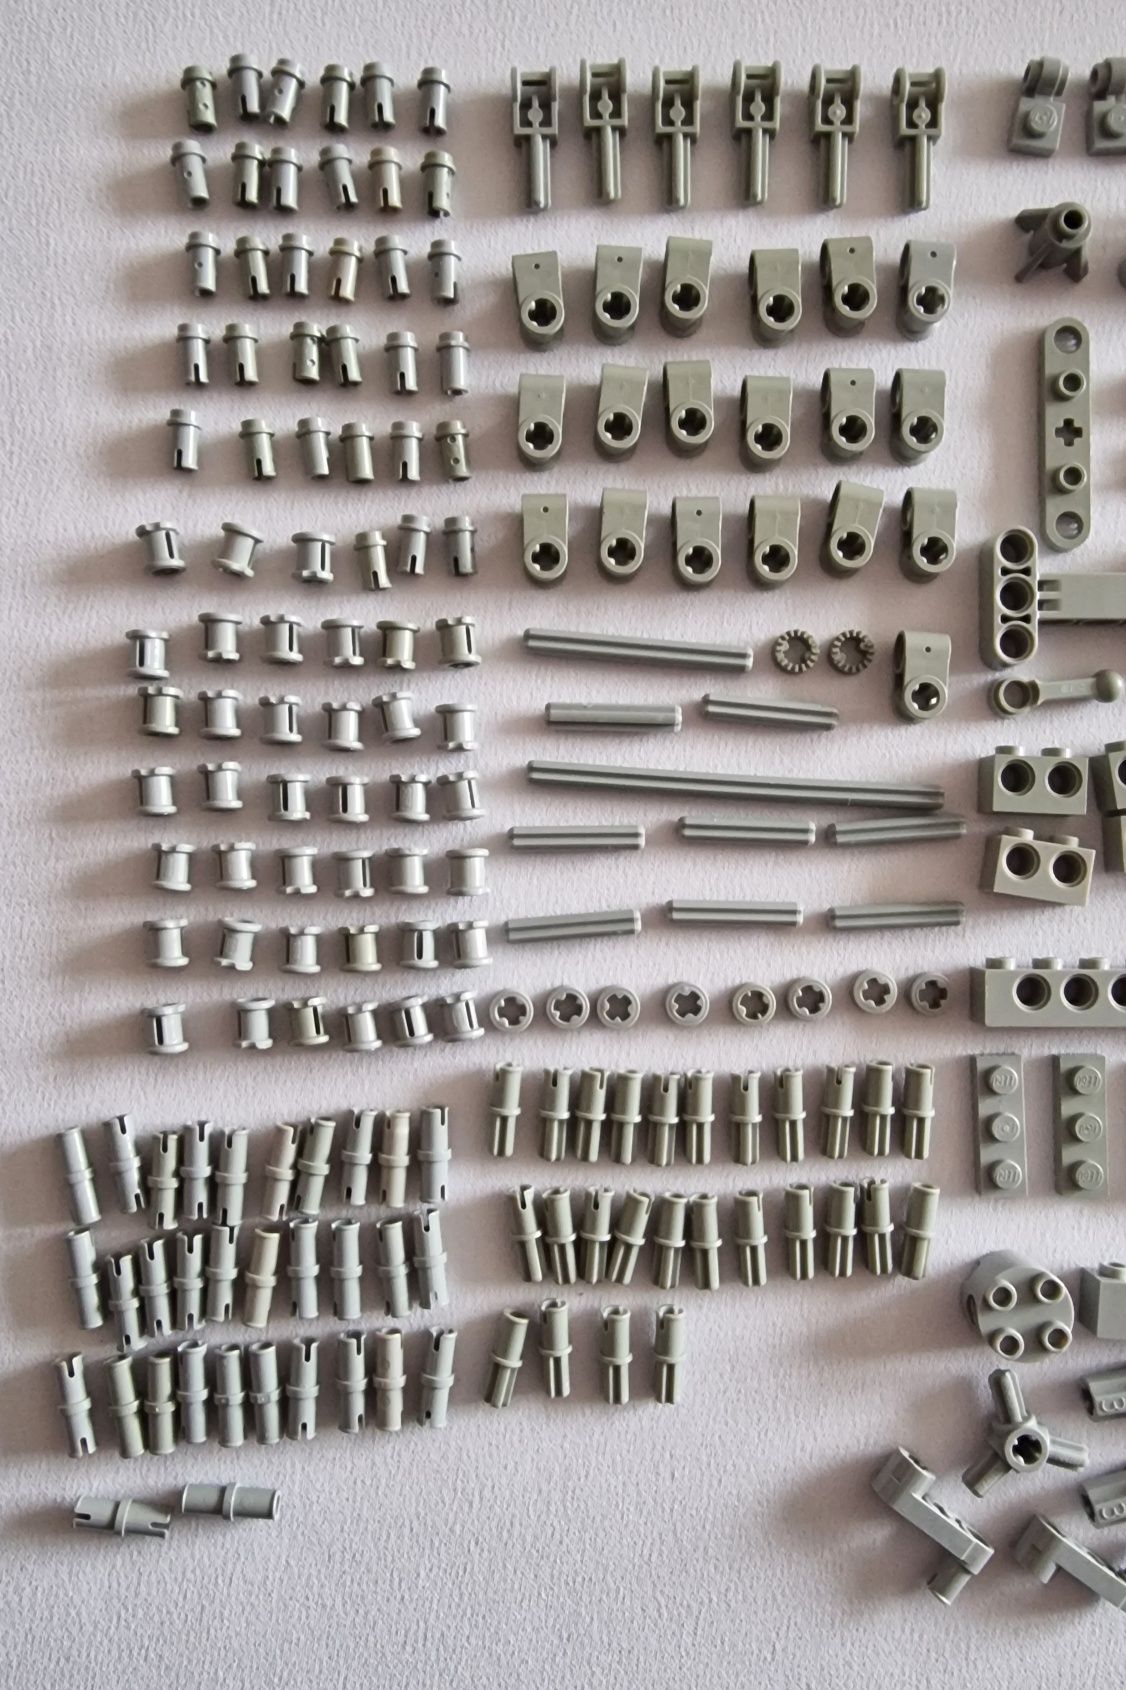 Lego Technic mix klocków szarych (old gray) ponad 300 elementów